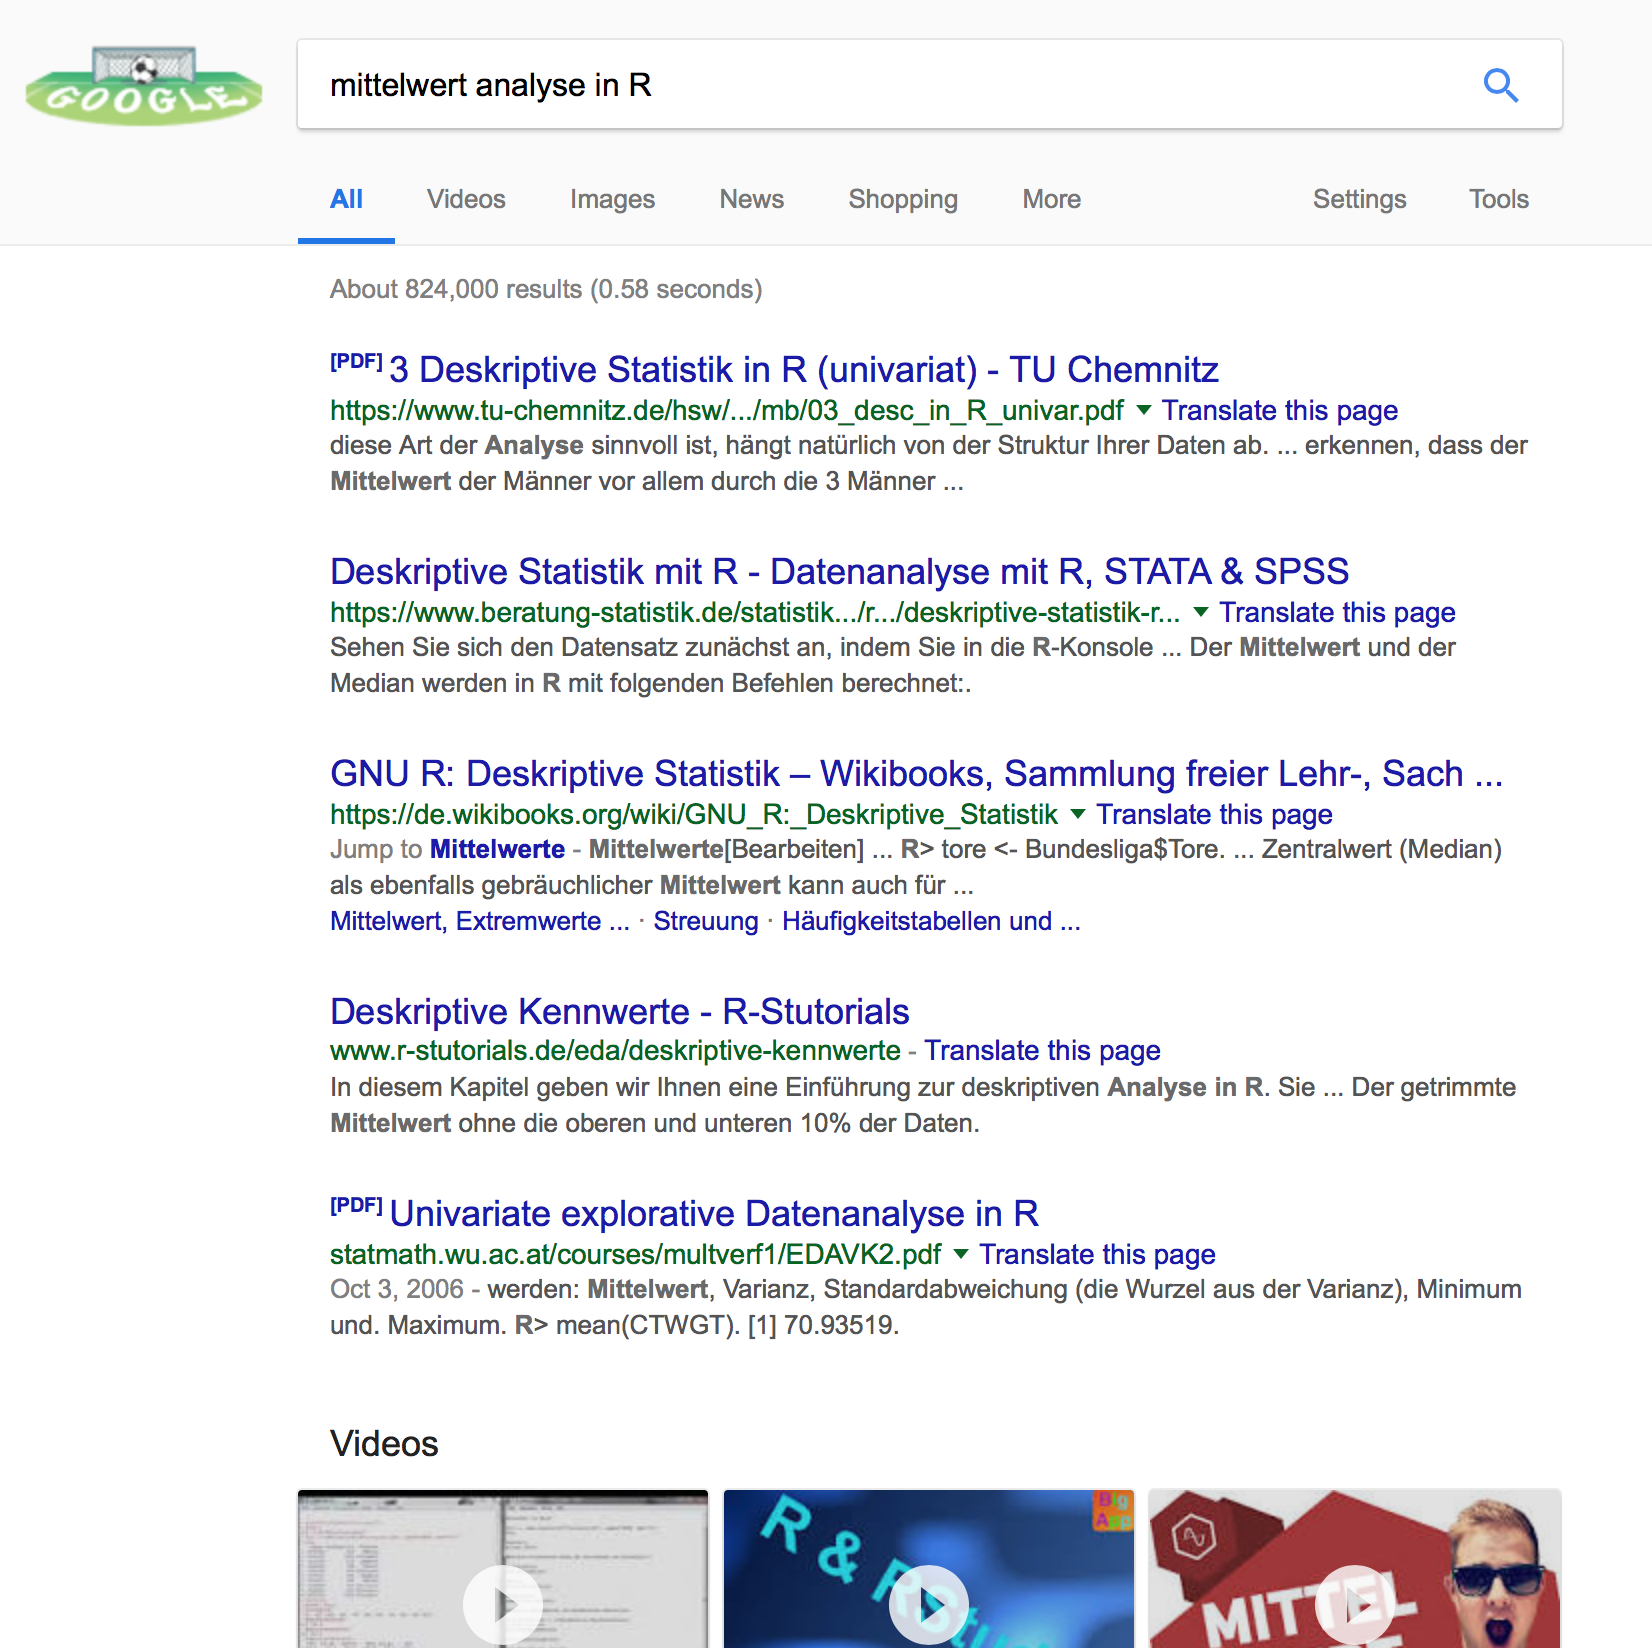 Suchergebnisse von Google am 16.10.2018